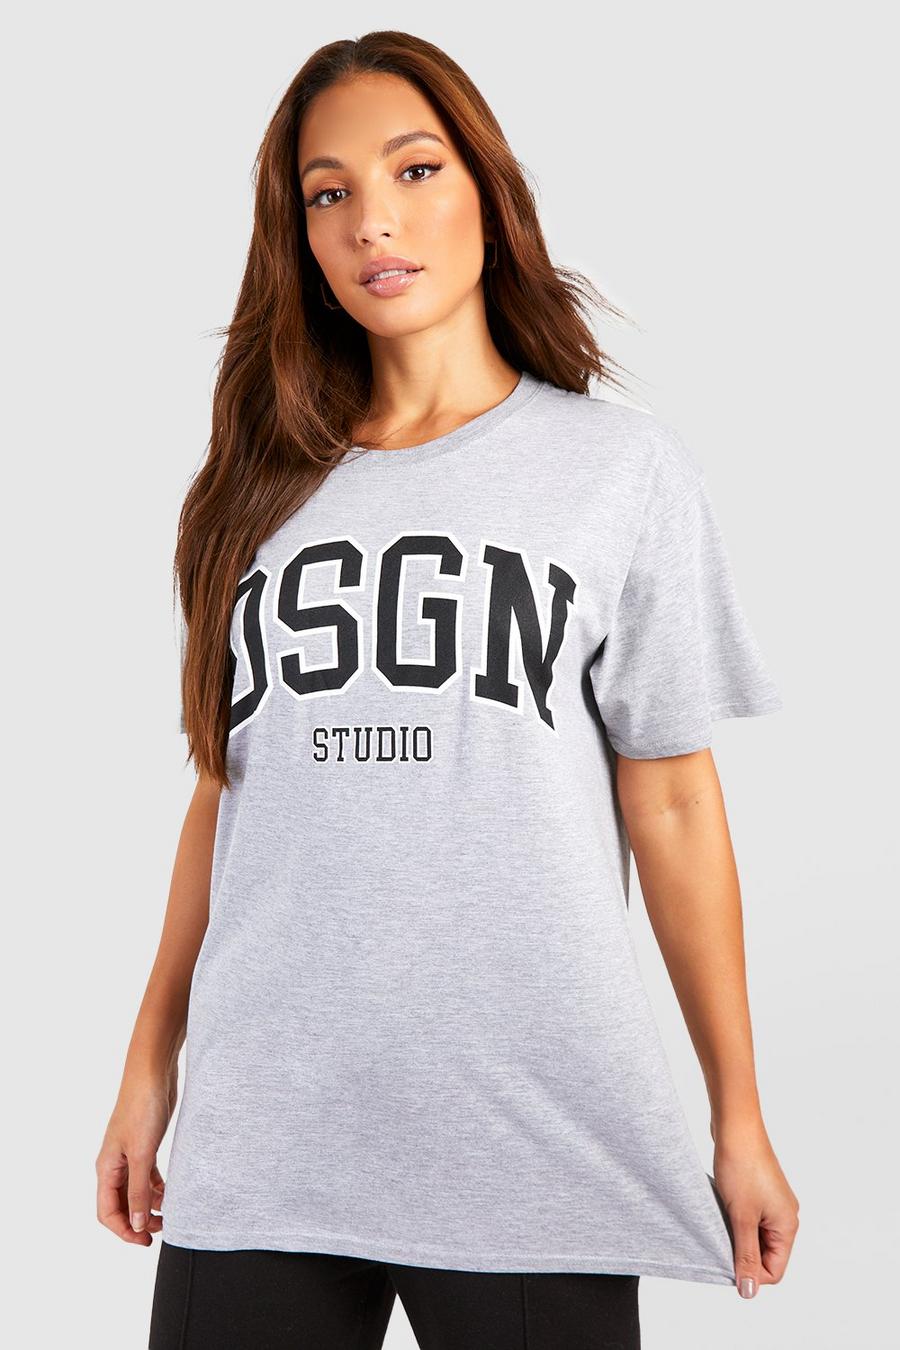 Tall Dsgn Studio T-Shirt, Grey